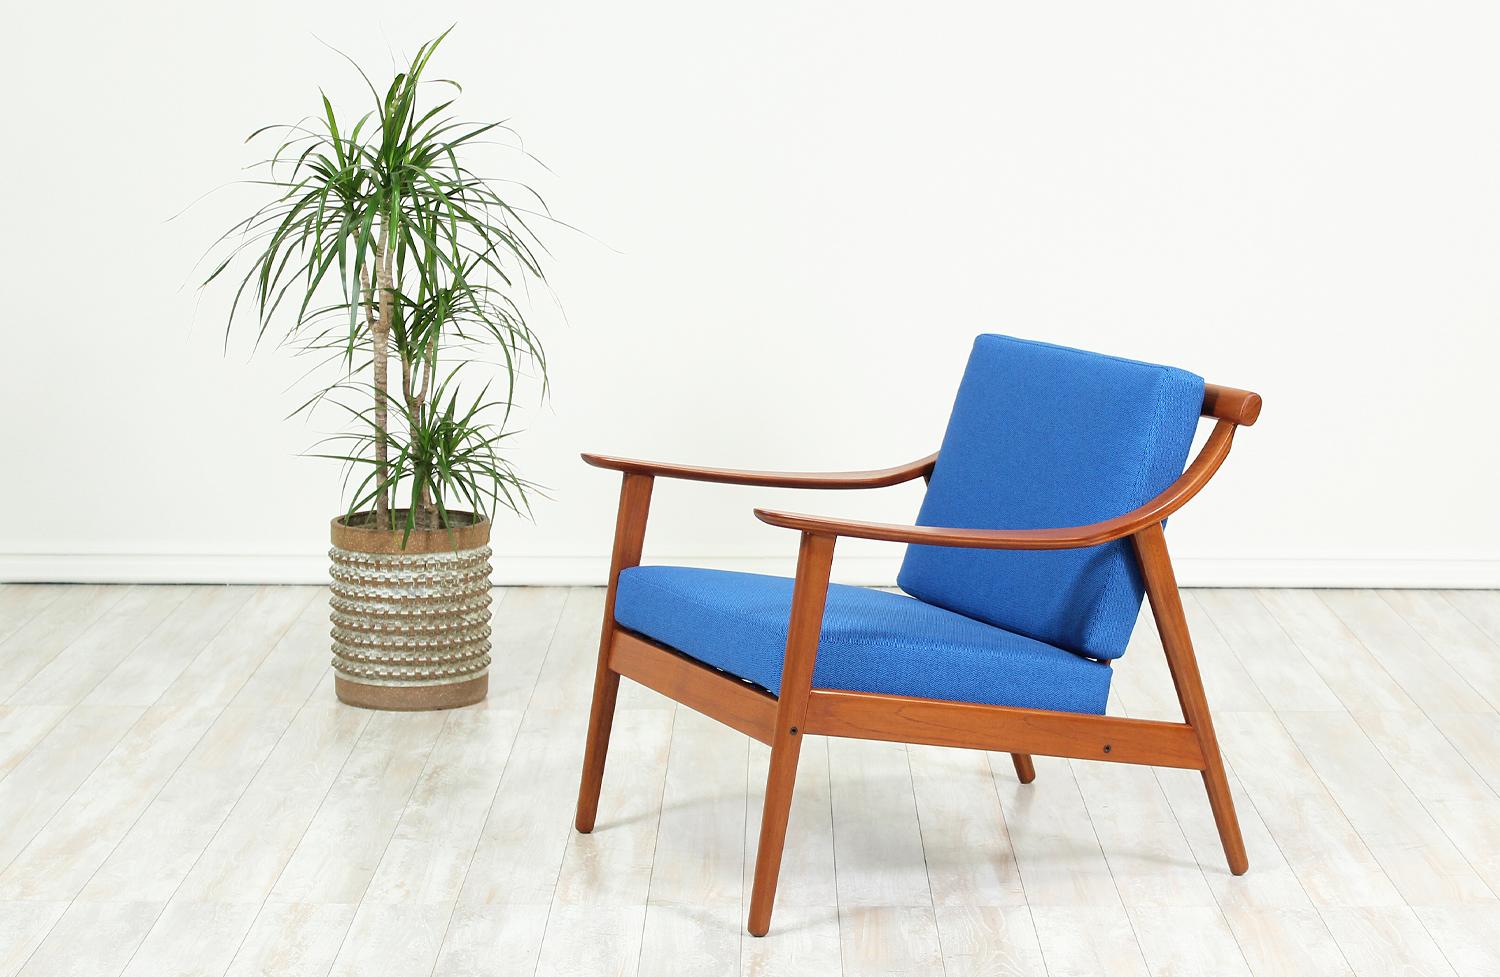 Wunderschön gearbeiteter Loungesessel:: entworfen von Arne Hovmand-Olsen für Mogens Kold in Dänemark:: um 1950. Dieser Stuhl der dänischen Moderne besteht aus einem massiven Teakholzrahmen mit Lattenrost und geschwungenen Armlehnen aus Bugholz. Die